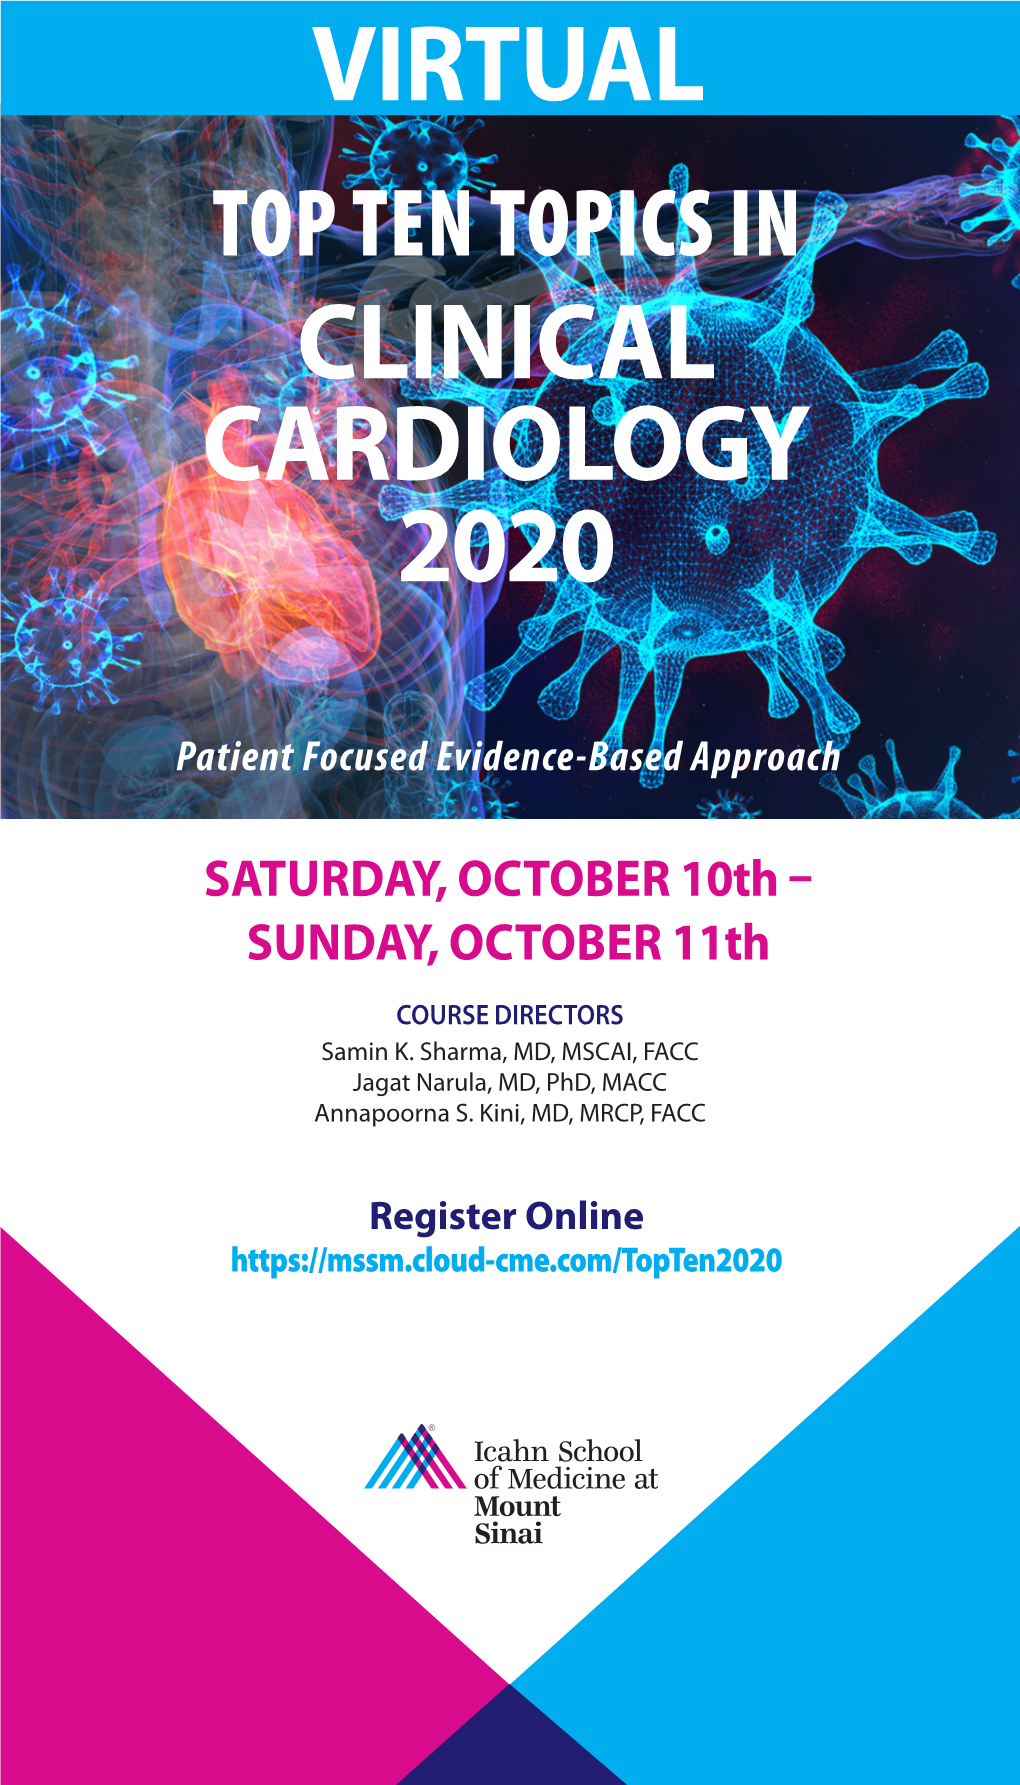 Clinical Cardiology 2020 Virtual